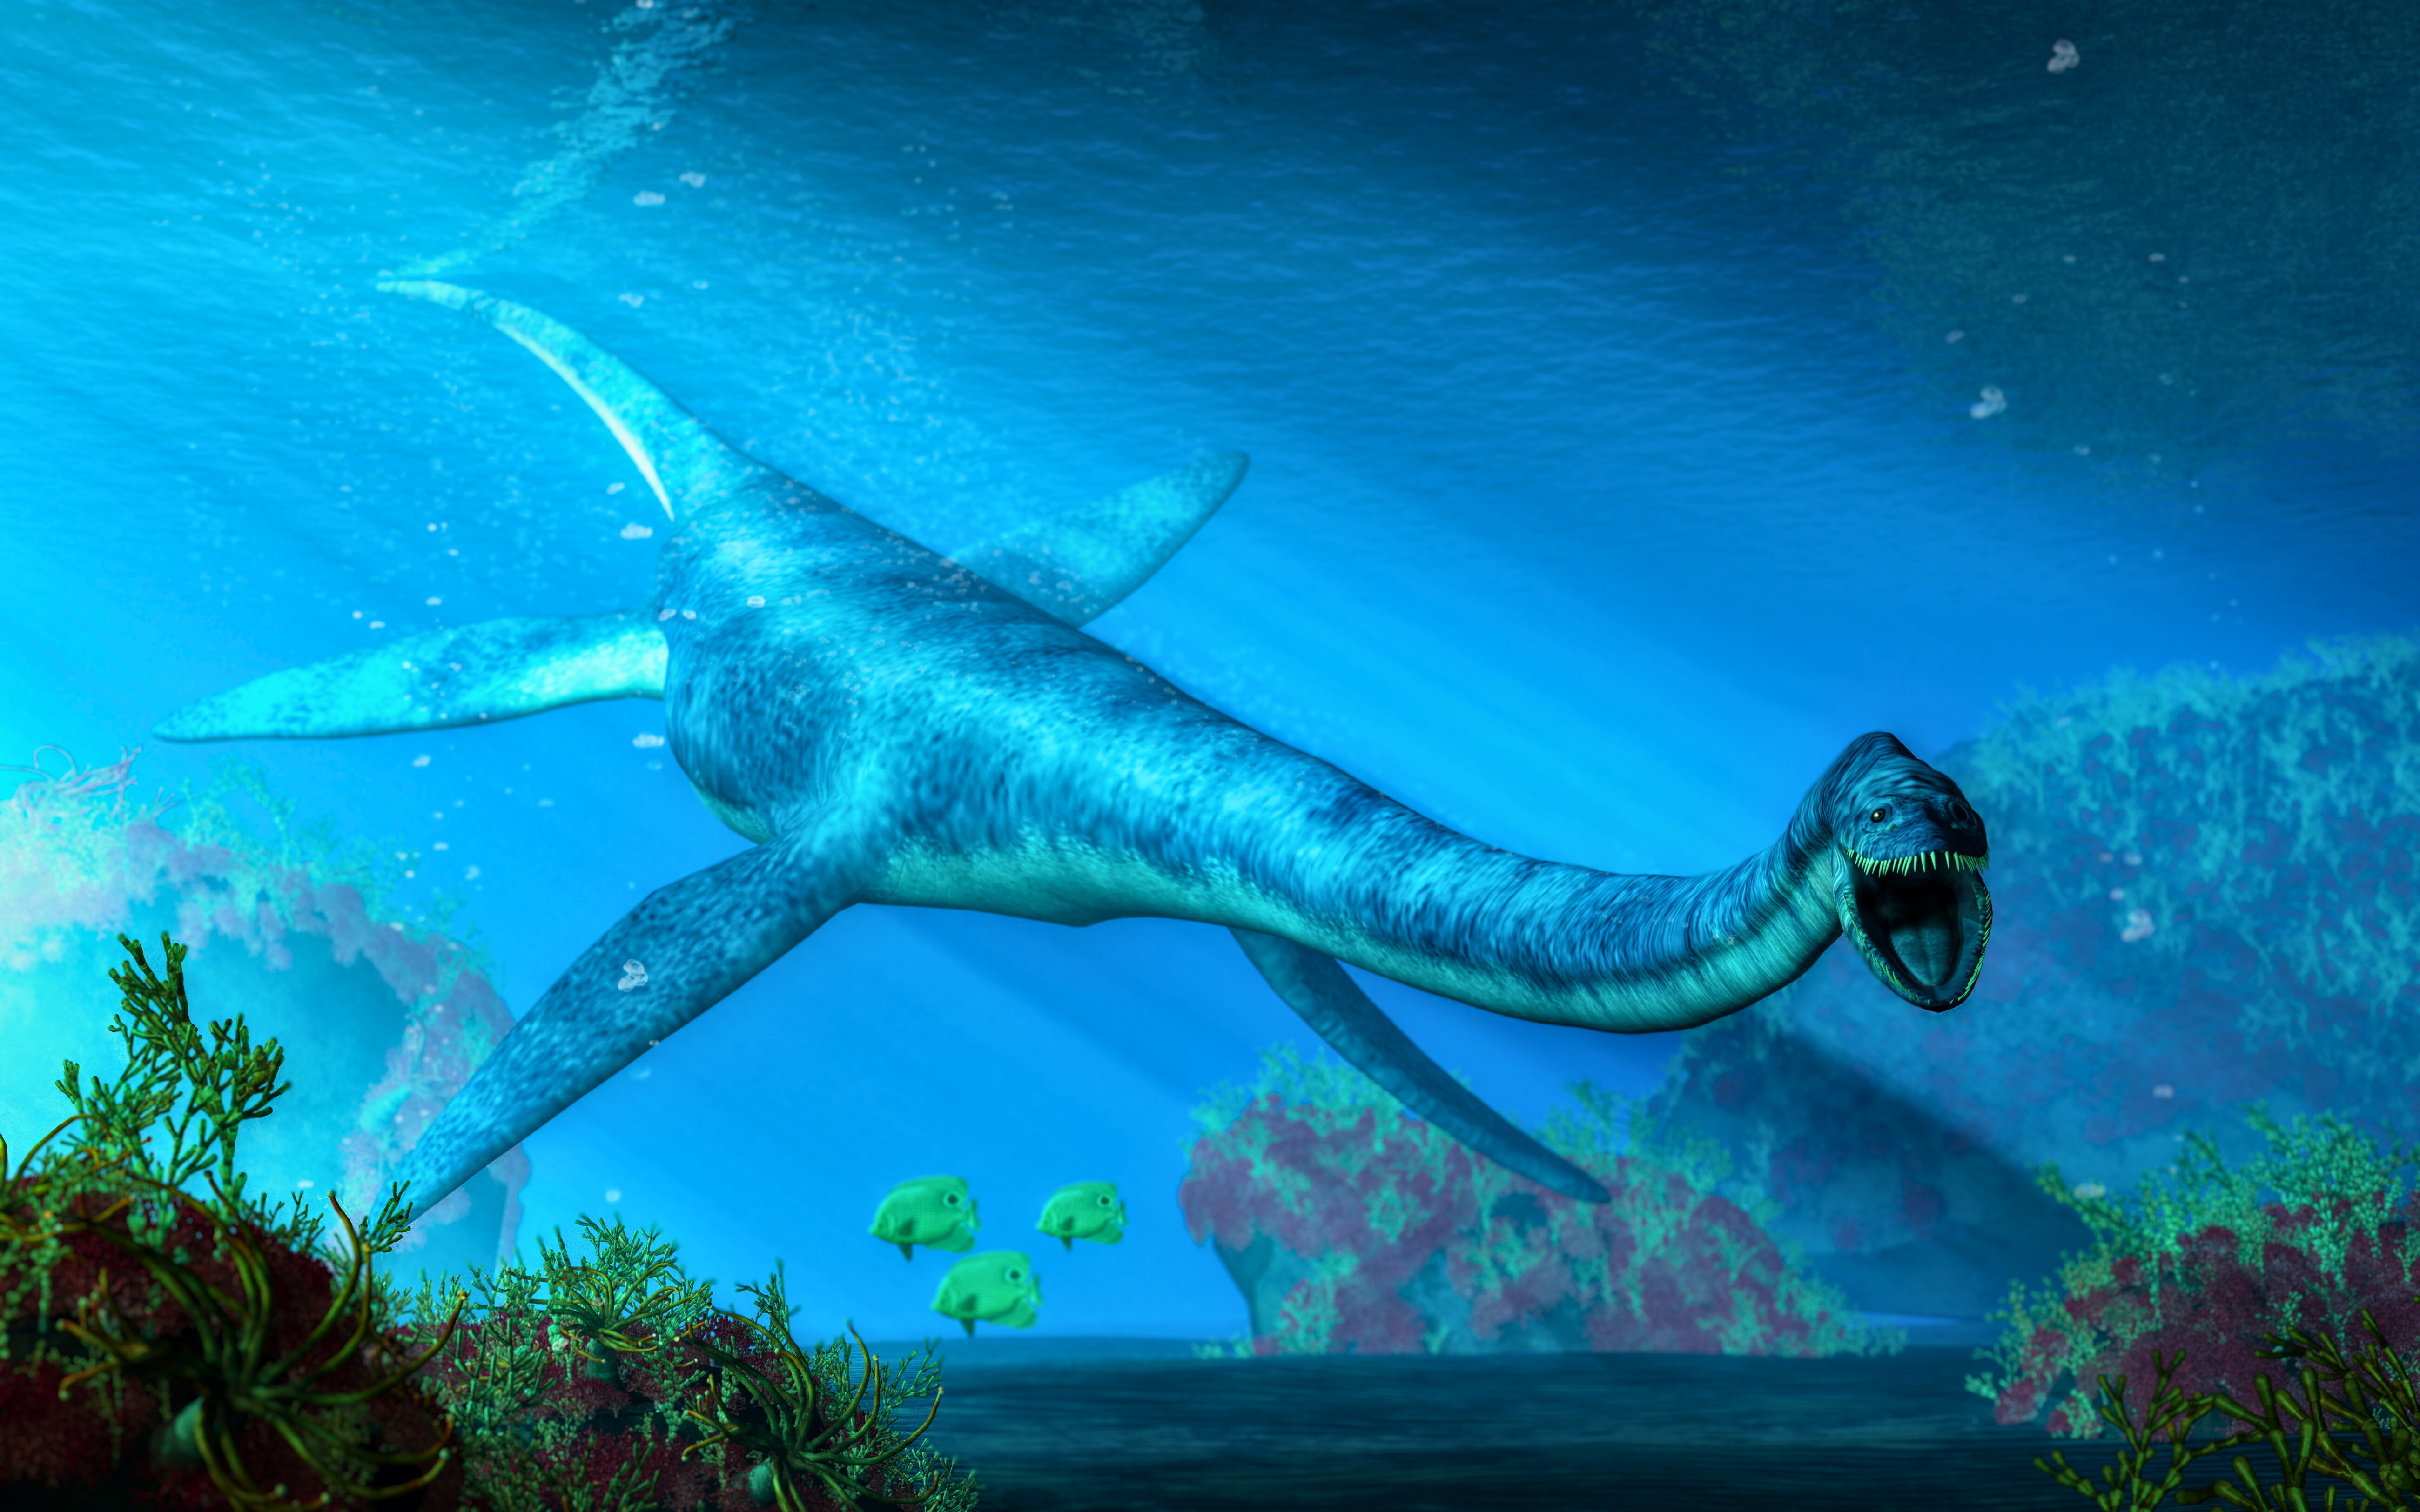 Un élasmosaure nage dans une mer peu profonde. Ce plésiosaure à long cou était un reptile aquatique qui peuplait les océans au Crétacé. Cette illustration est un rendu 3D. © Daniel Eskridge, Adobe Stock